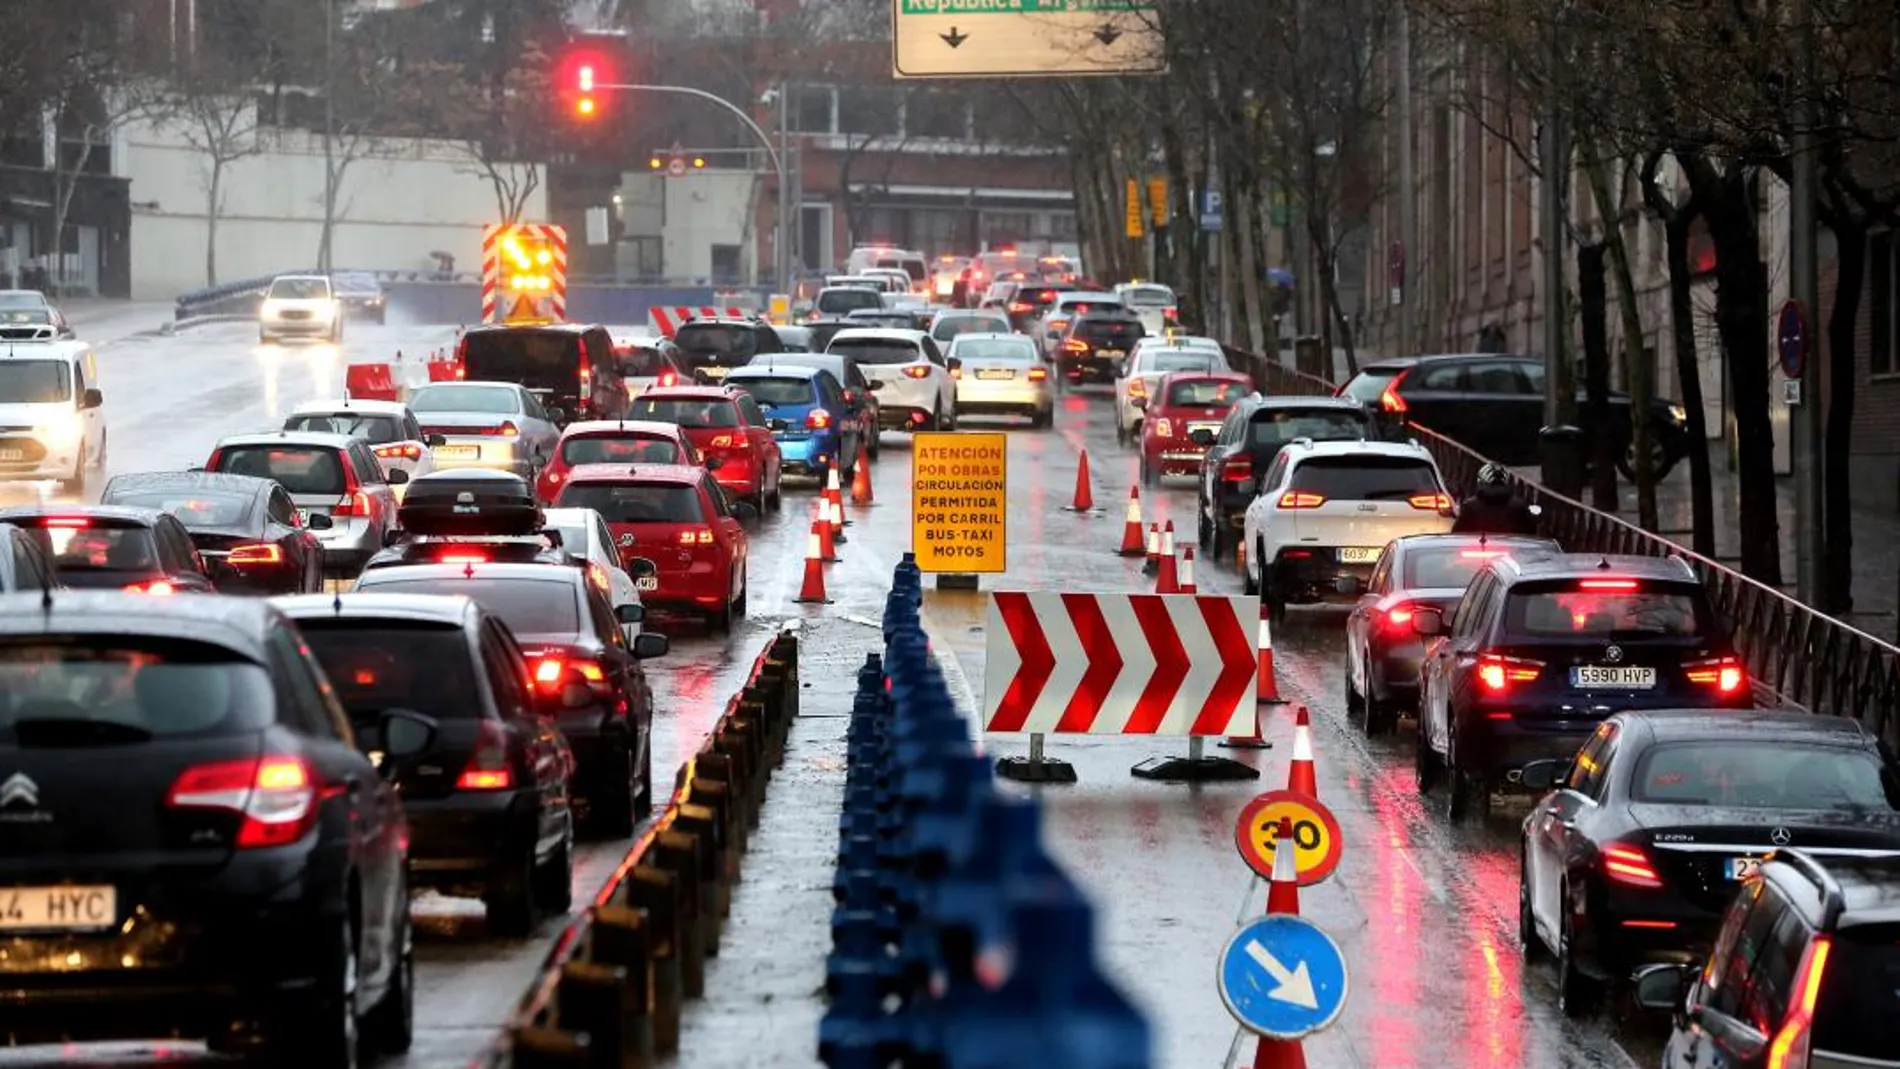 La lluvia y el cierre de túneles, como el de República Argentina de la imagen, complicaron ayer, aún más, el tráfico en Madrid